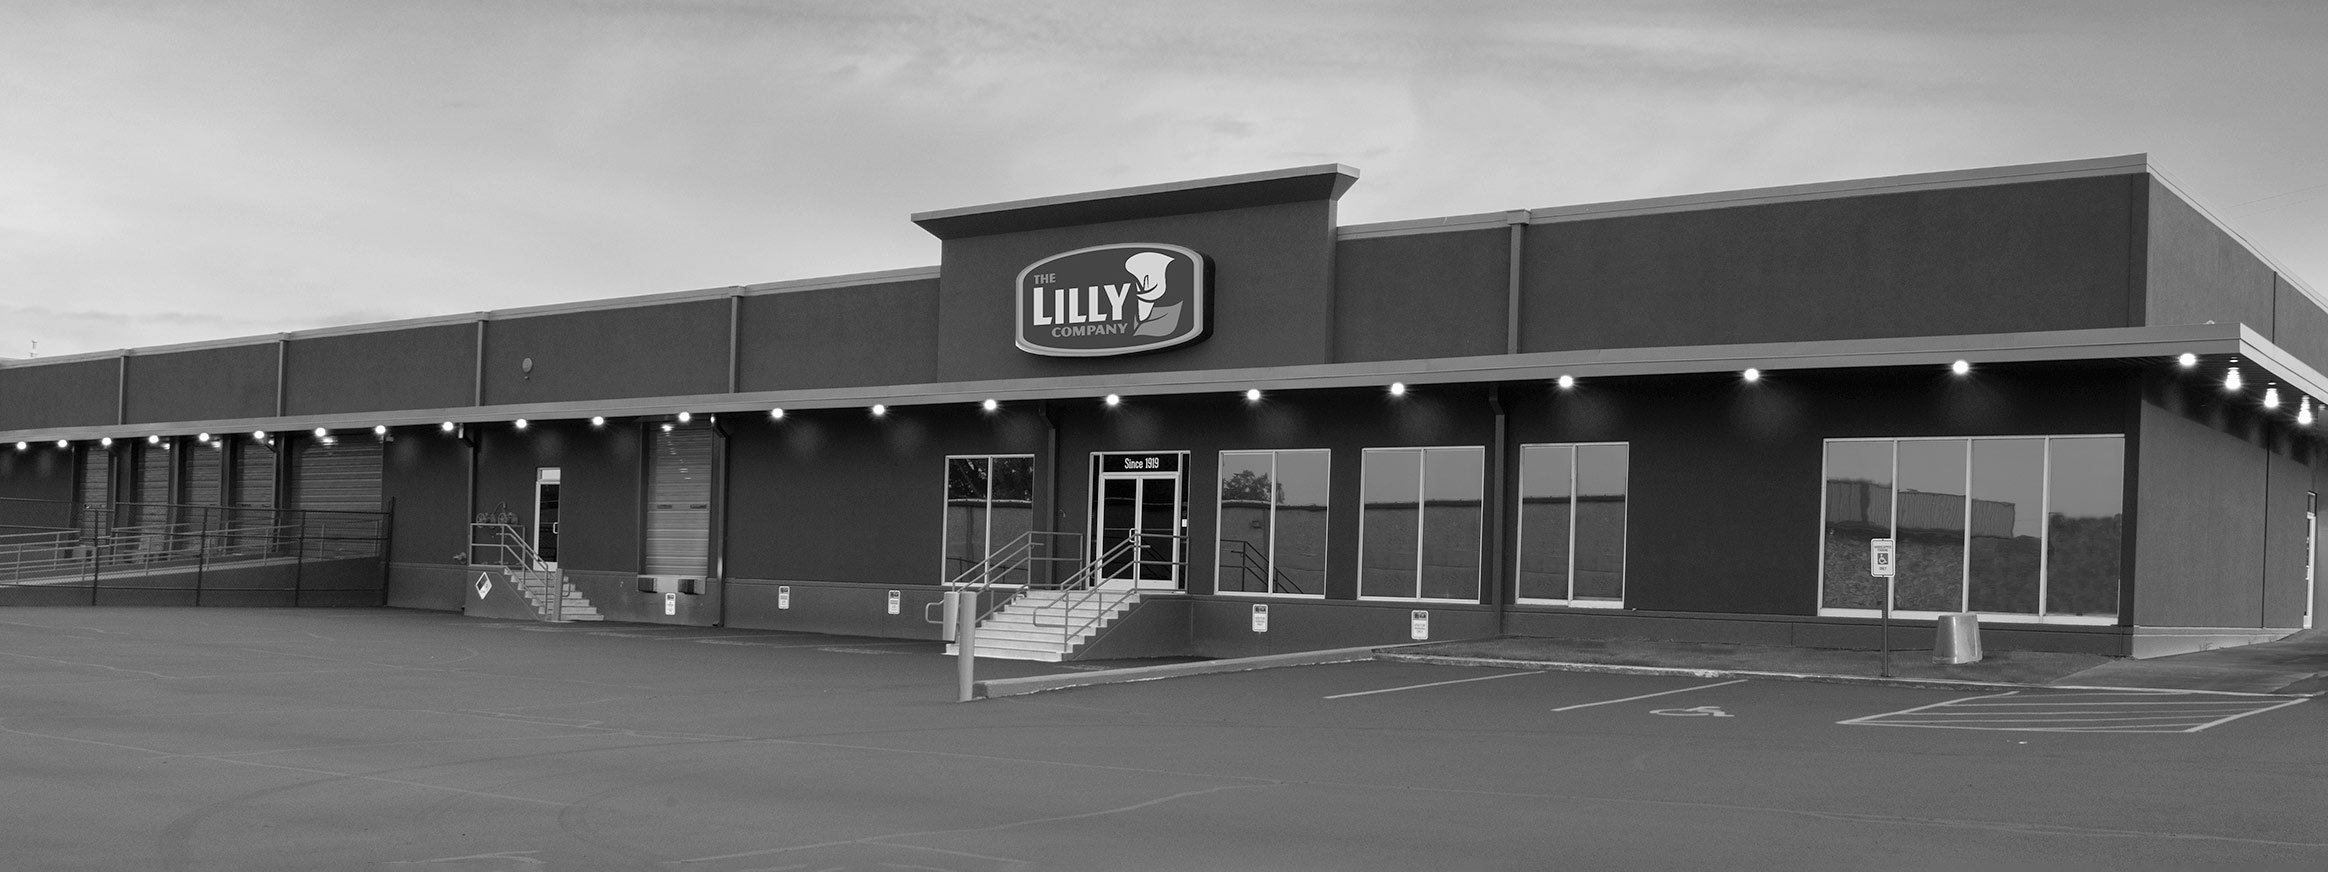 The Lilly Company, Memphis, TN